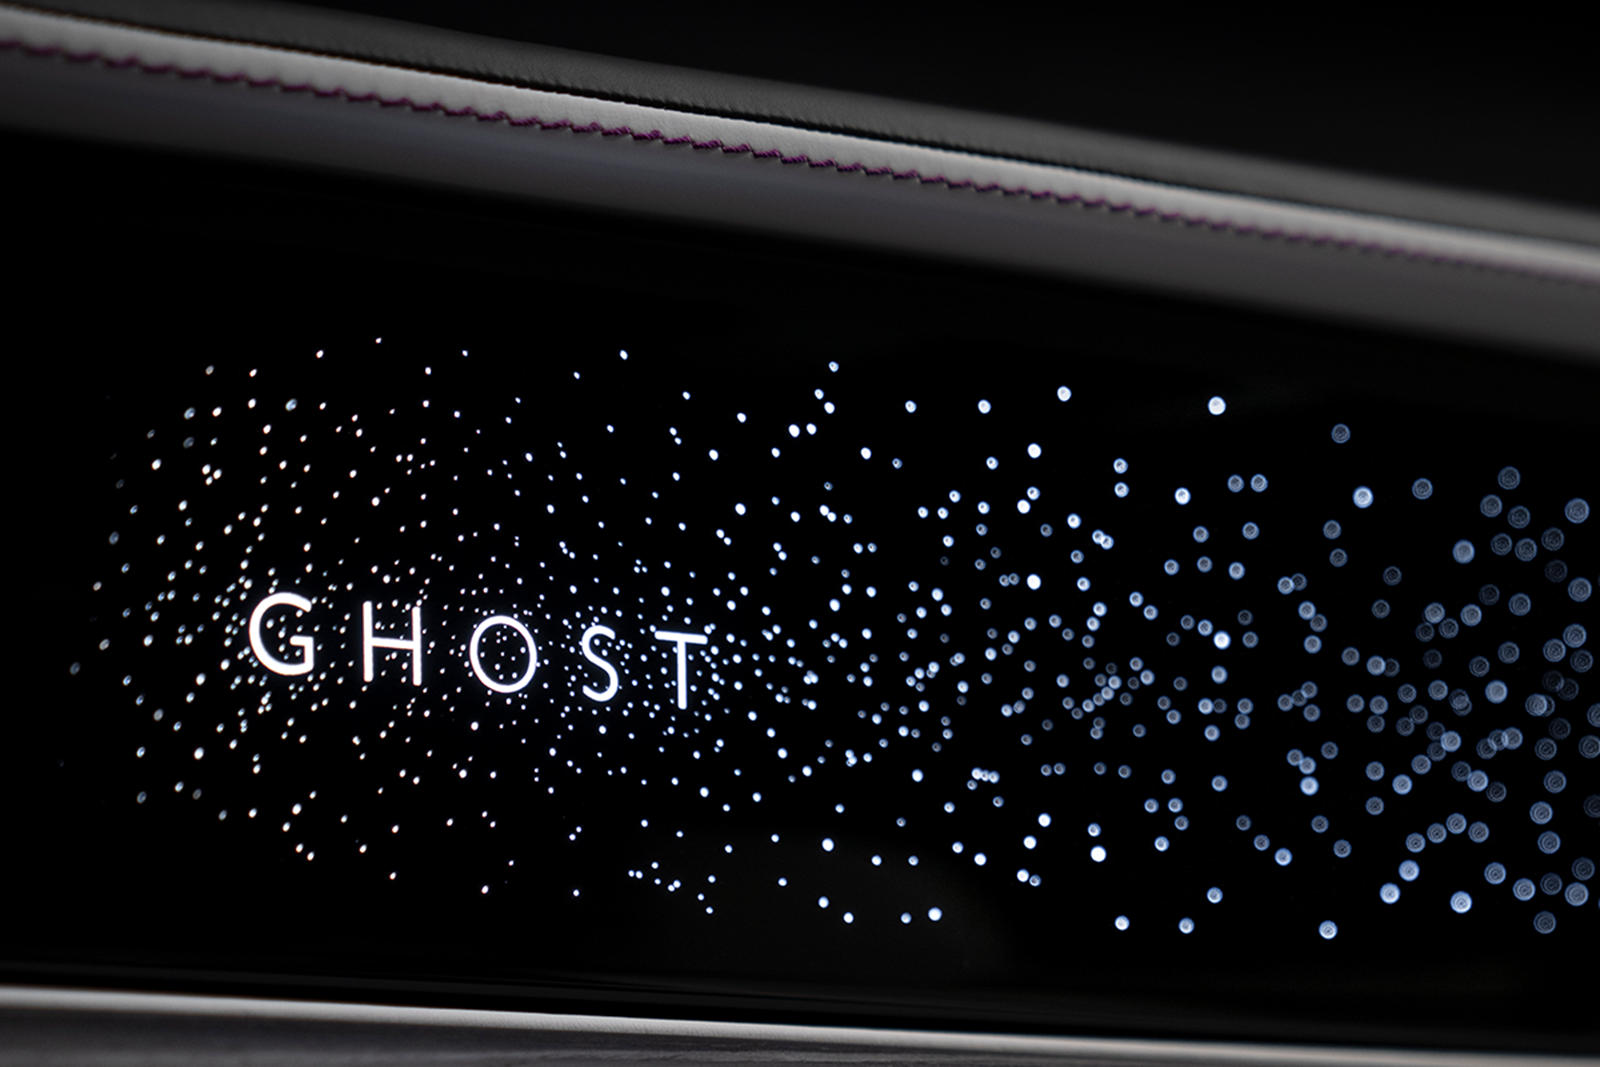 Название Ghost, расположенное перед пассажиром на переднем сиденье, подсвечивается и окружено более чем 850 звездами, излучающими мягкий свет в салон. Когда машина выключена, созвездие полностью исчезает. Нововведение следует за знаменитым хедлайнеро